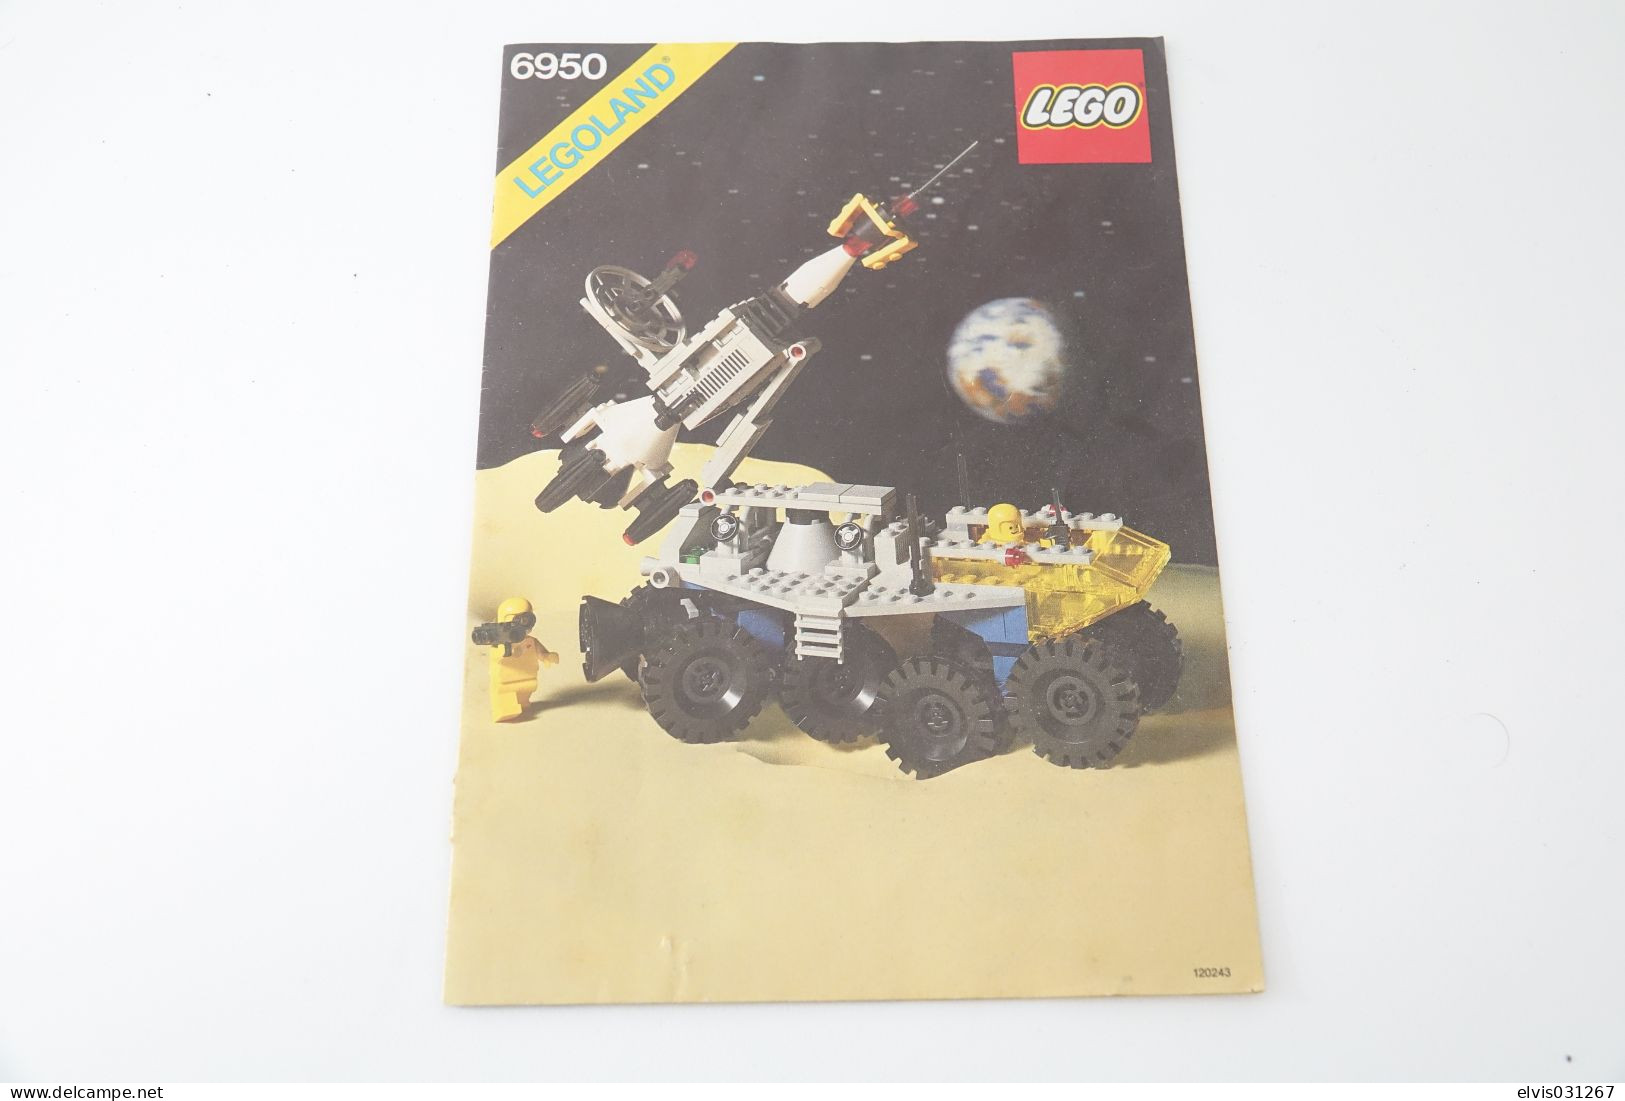 LEGO - 6950 Mobile Rocket Transport box and instruction manual - Original Lego 1982 - Vintage